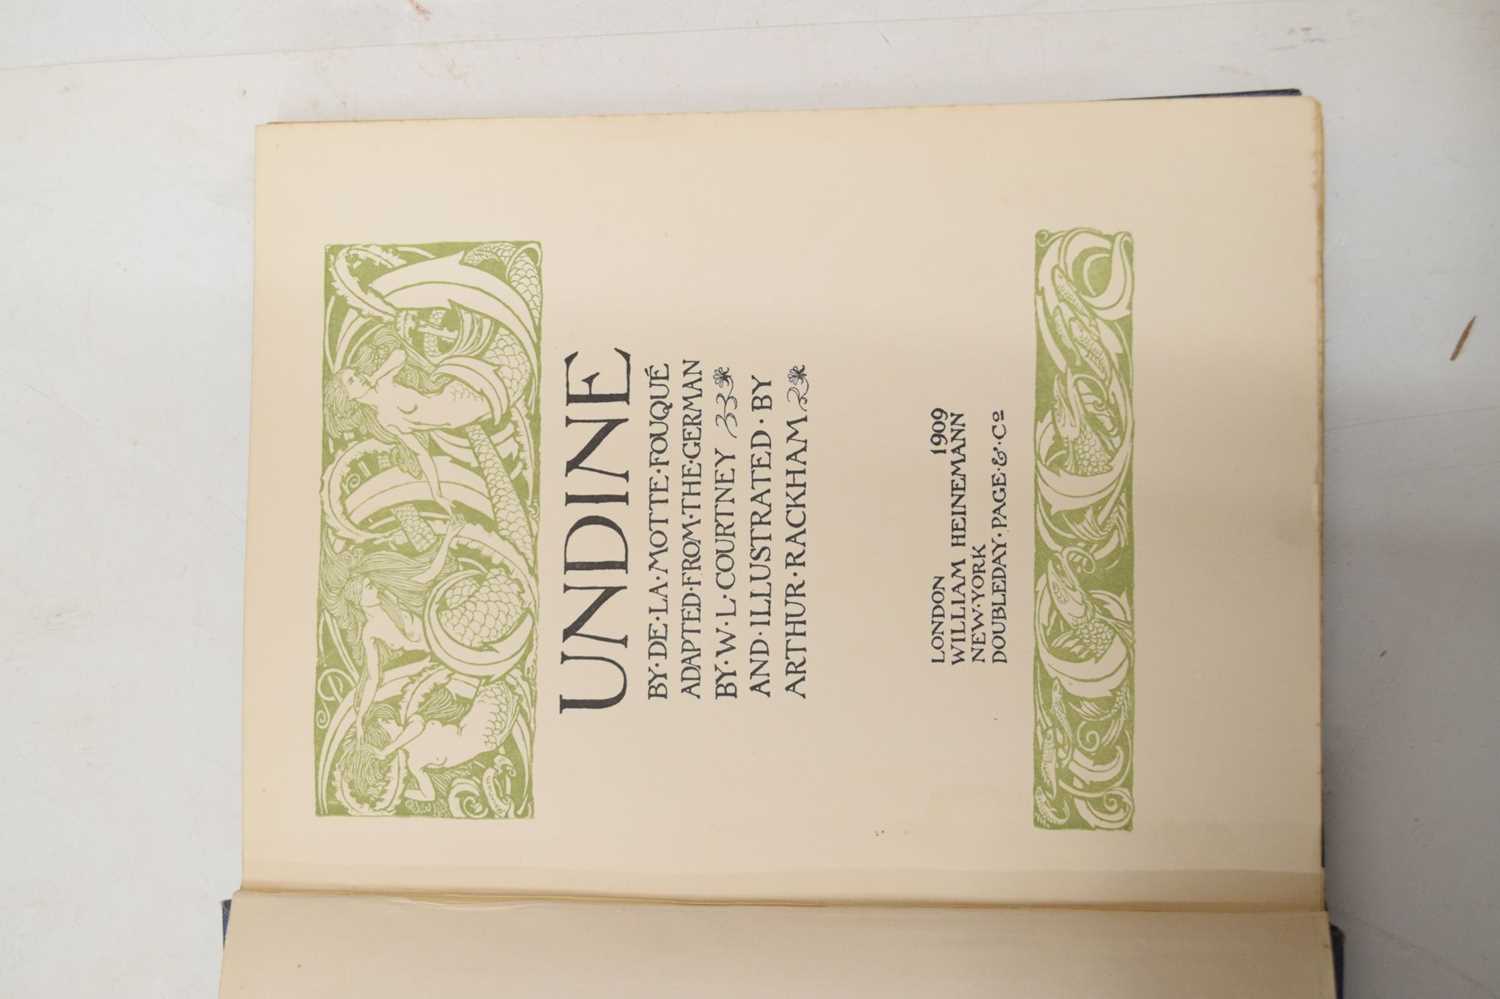 De La Motte Fouqué - 'Undine' - Illustrated by Arthur Rackham, 1909 - Image 4 of 7